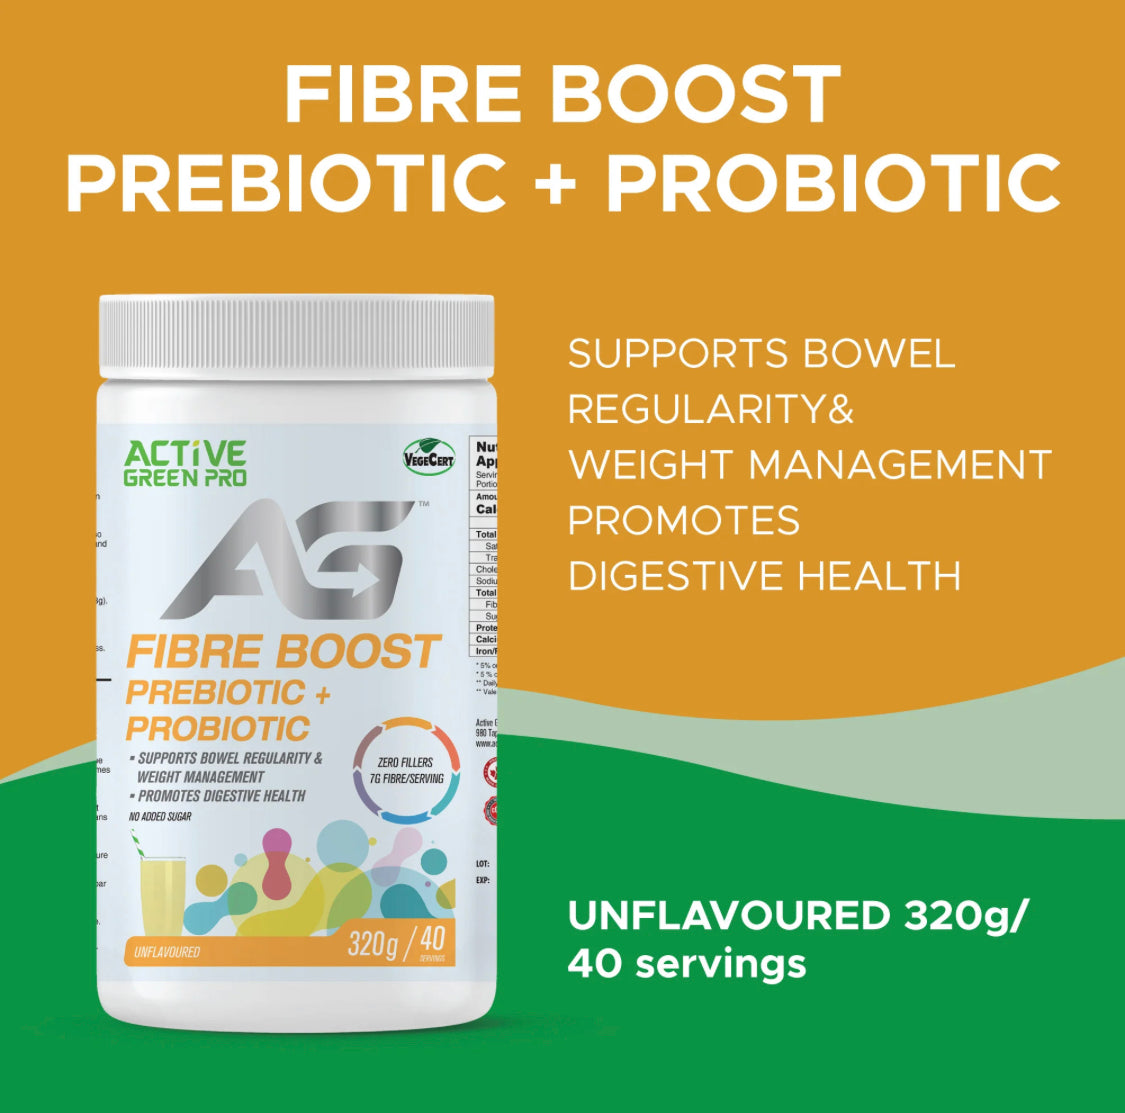 Active Green Pro Fibre Boost Prebiotic+Probiotic (320g / 40 servings)